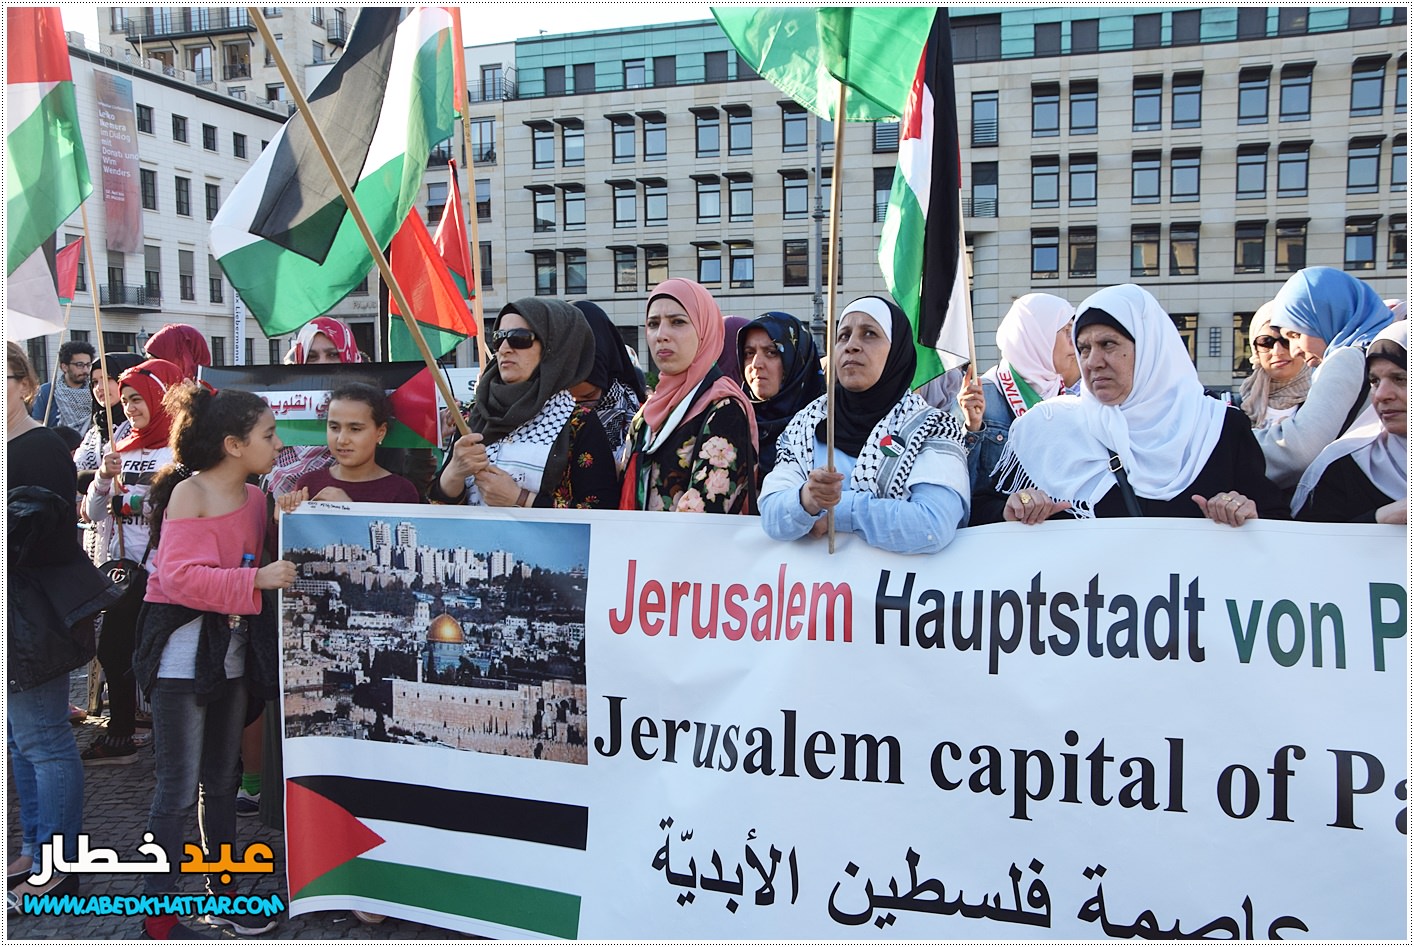 اللجنة الوطنية الفلسطينية تنظم وقفة جماهيرية أمام بوابة براندنبورغ التاريخية .استنكارا للعدوان المتواصل على شعبنا في فلسطين